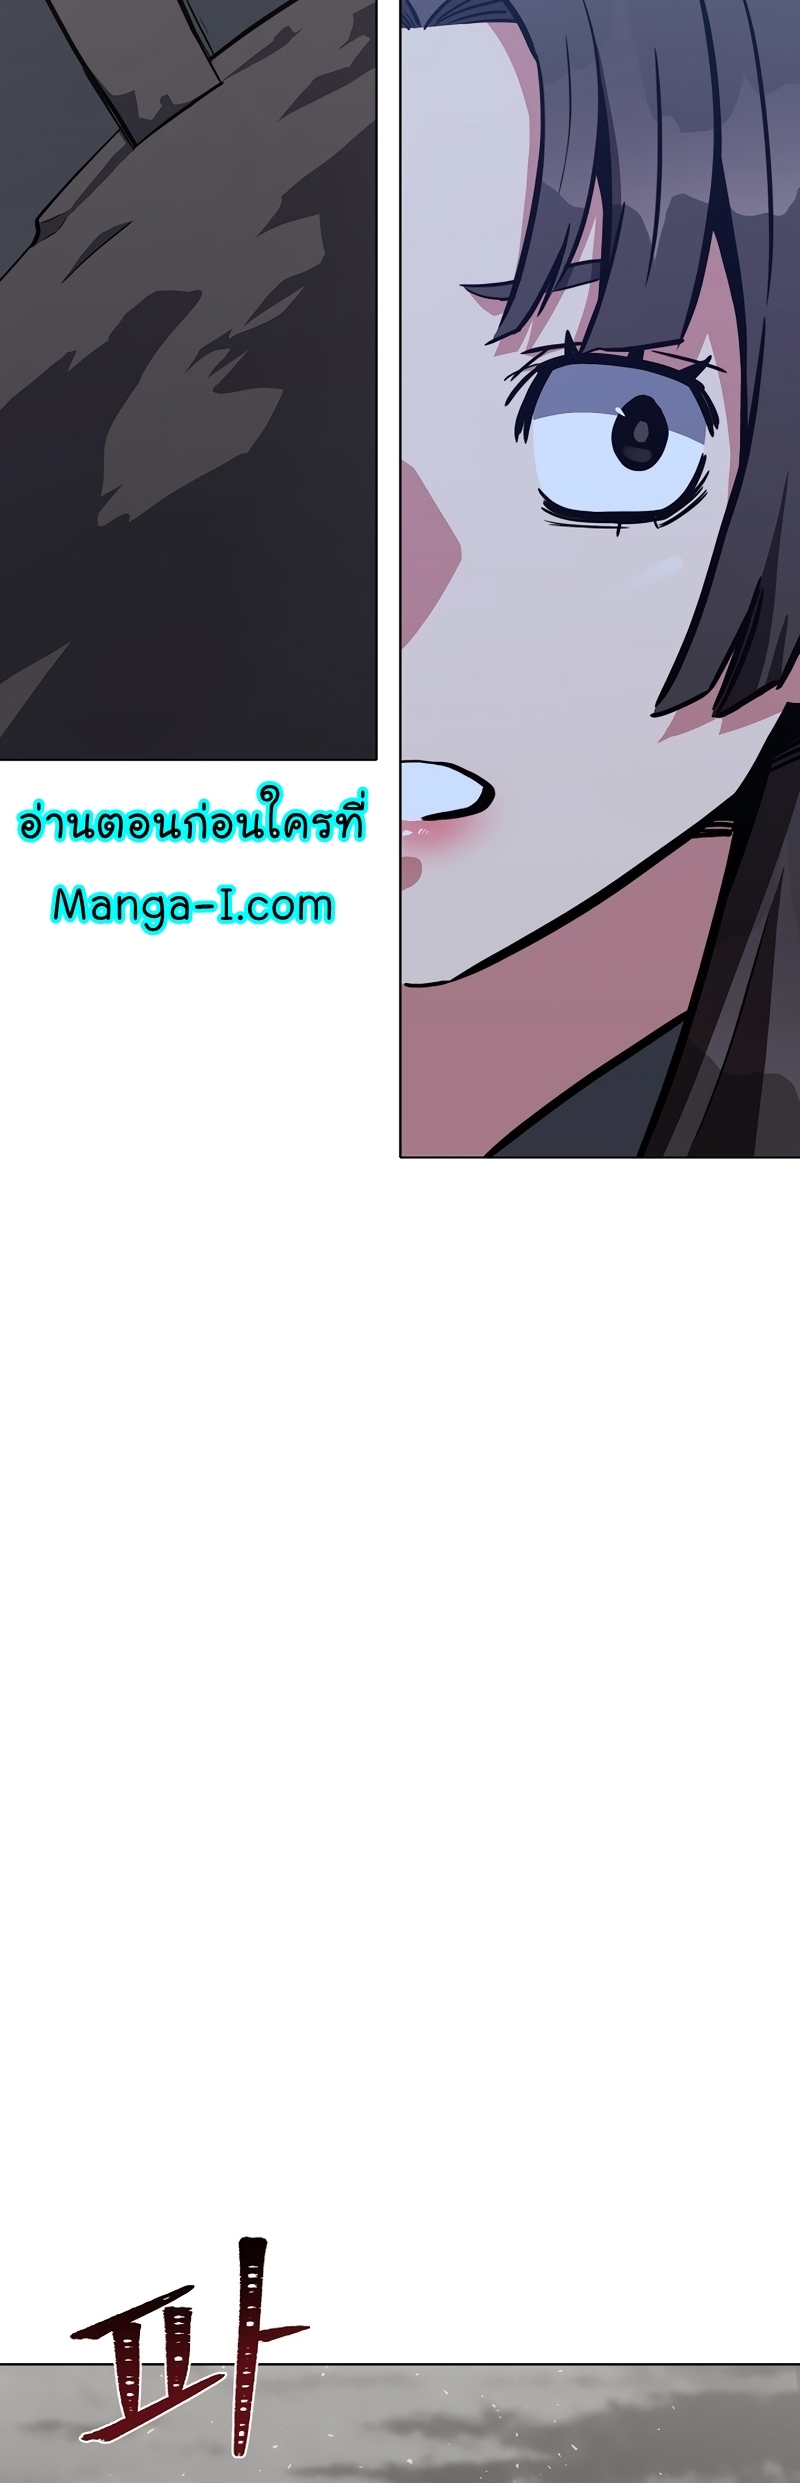 Manga Manhwa Level 1 Player 64 (64)